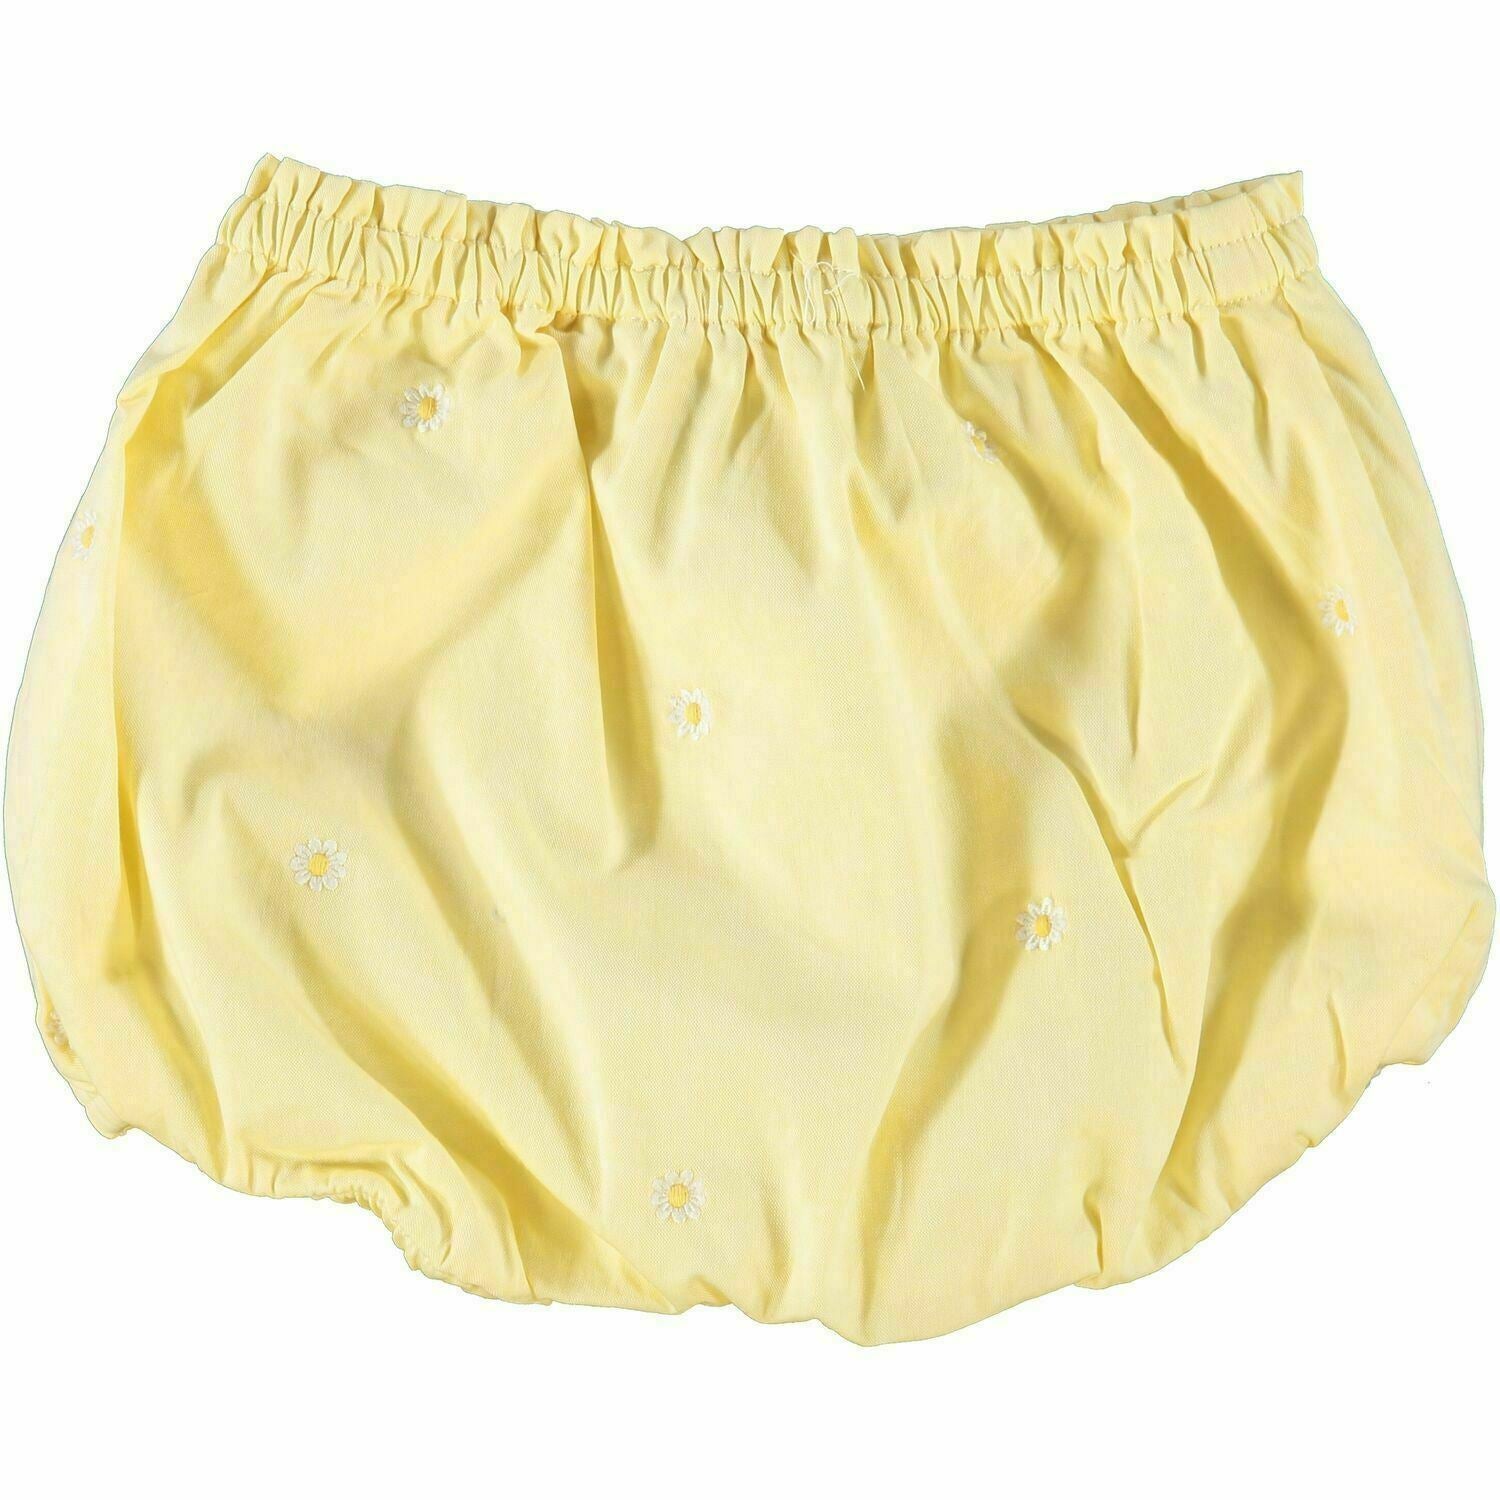 RALPH LAUREN Baby Girls' Yellow Daisy Shorts, size 9 months